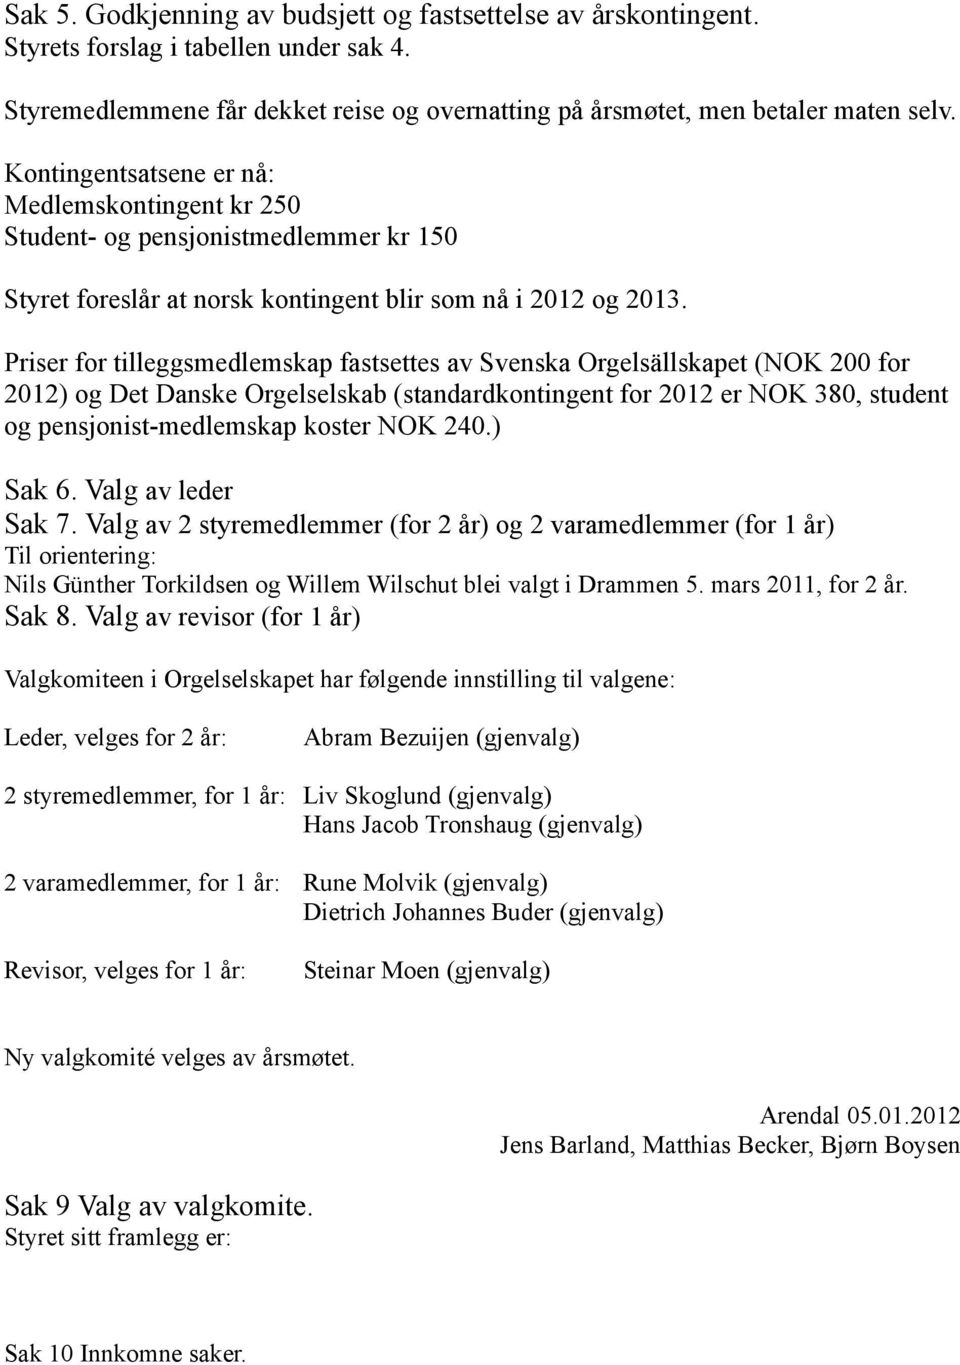 Priser for tilleggsmedlemskap fastsettes av Svenska Orgelsällskapet (NOK 200 for 2012) og Det Danske Orgelselskab (standardkontingent for 2012 er NOK 380, student og pensjonist-medlemskap koster NOK